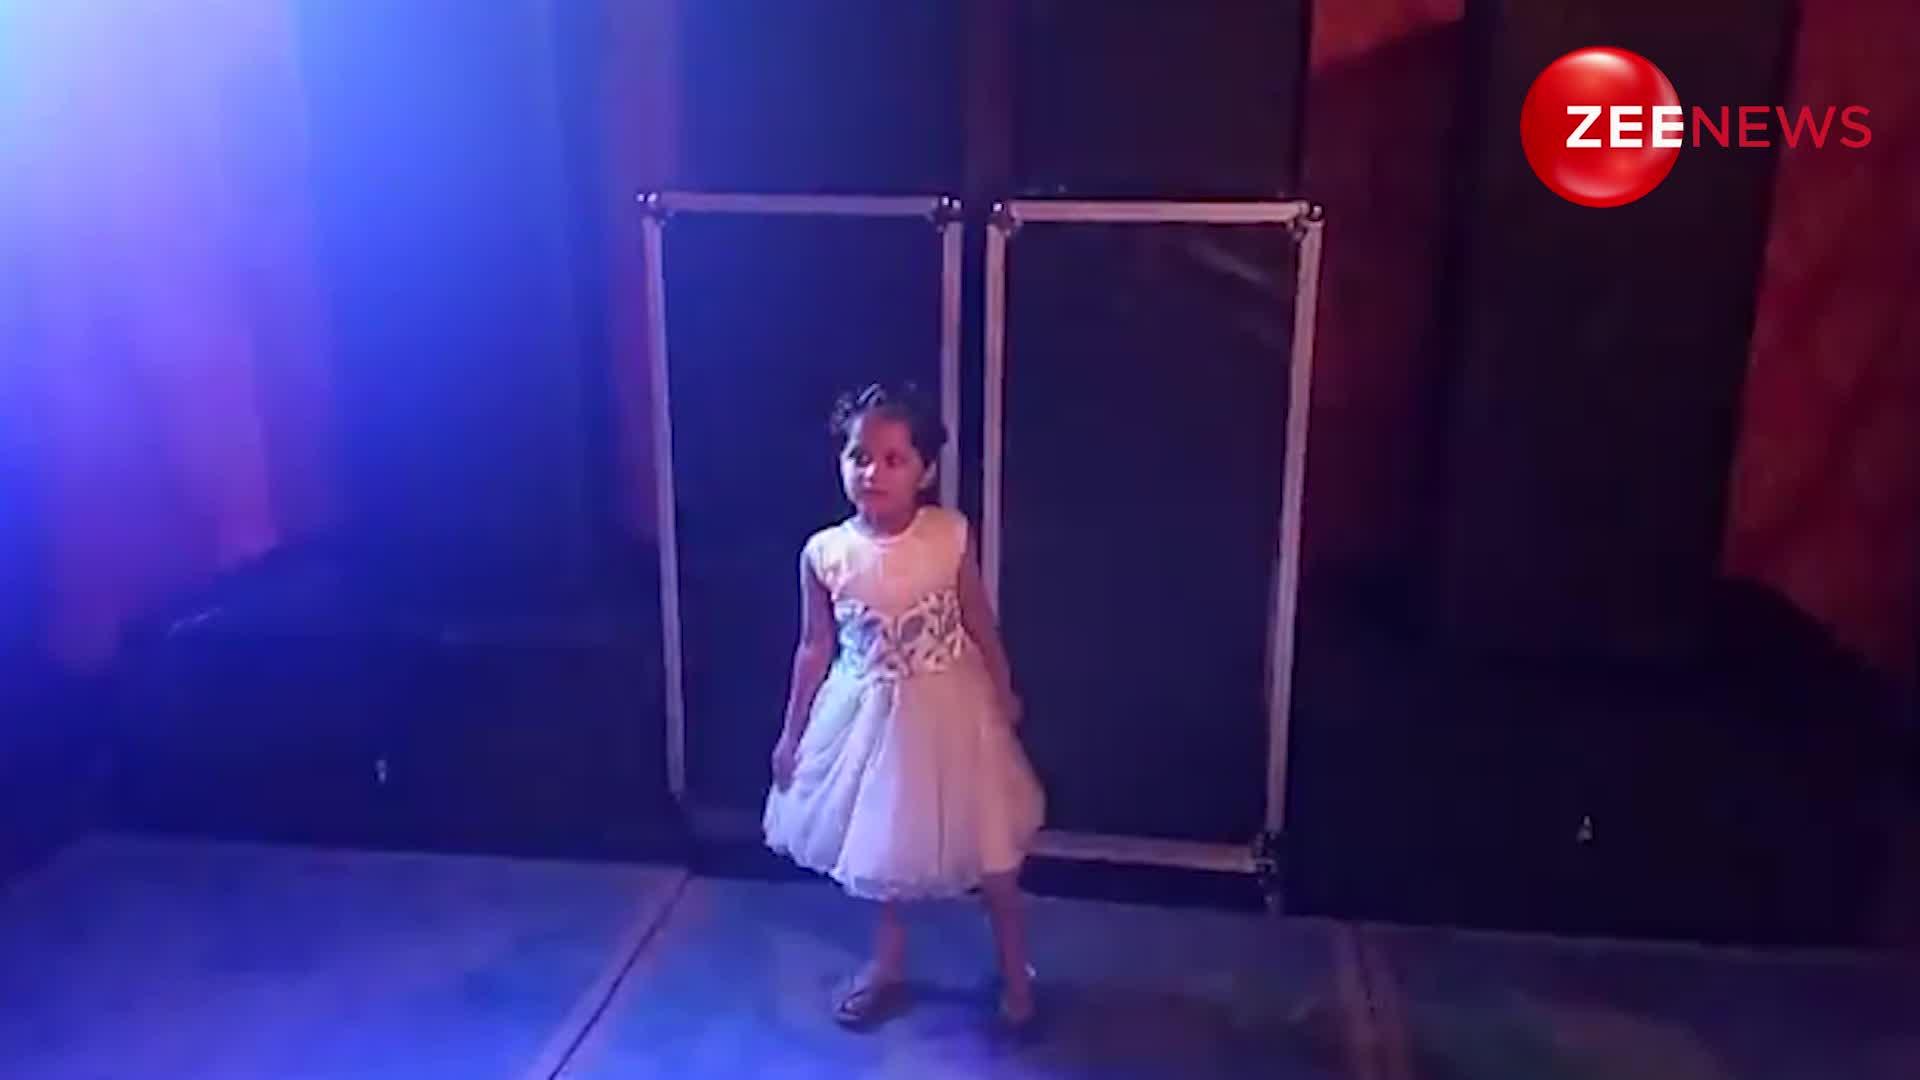 फ्लोर पर हरियाणवी गाने पर छोटी बच्ची कर रही थी डांस, तभी नाचते-नाचते शरमा गई लड़की